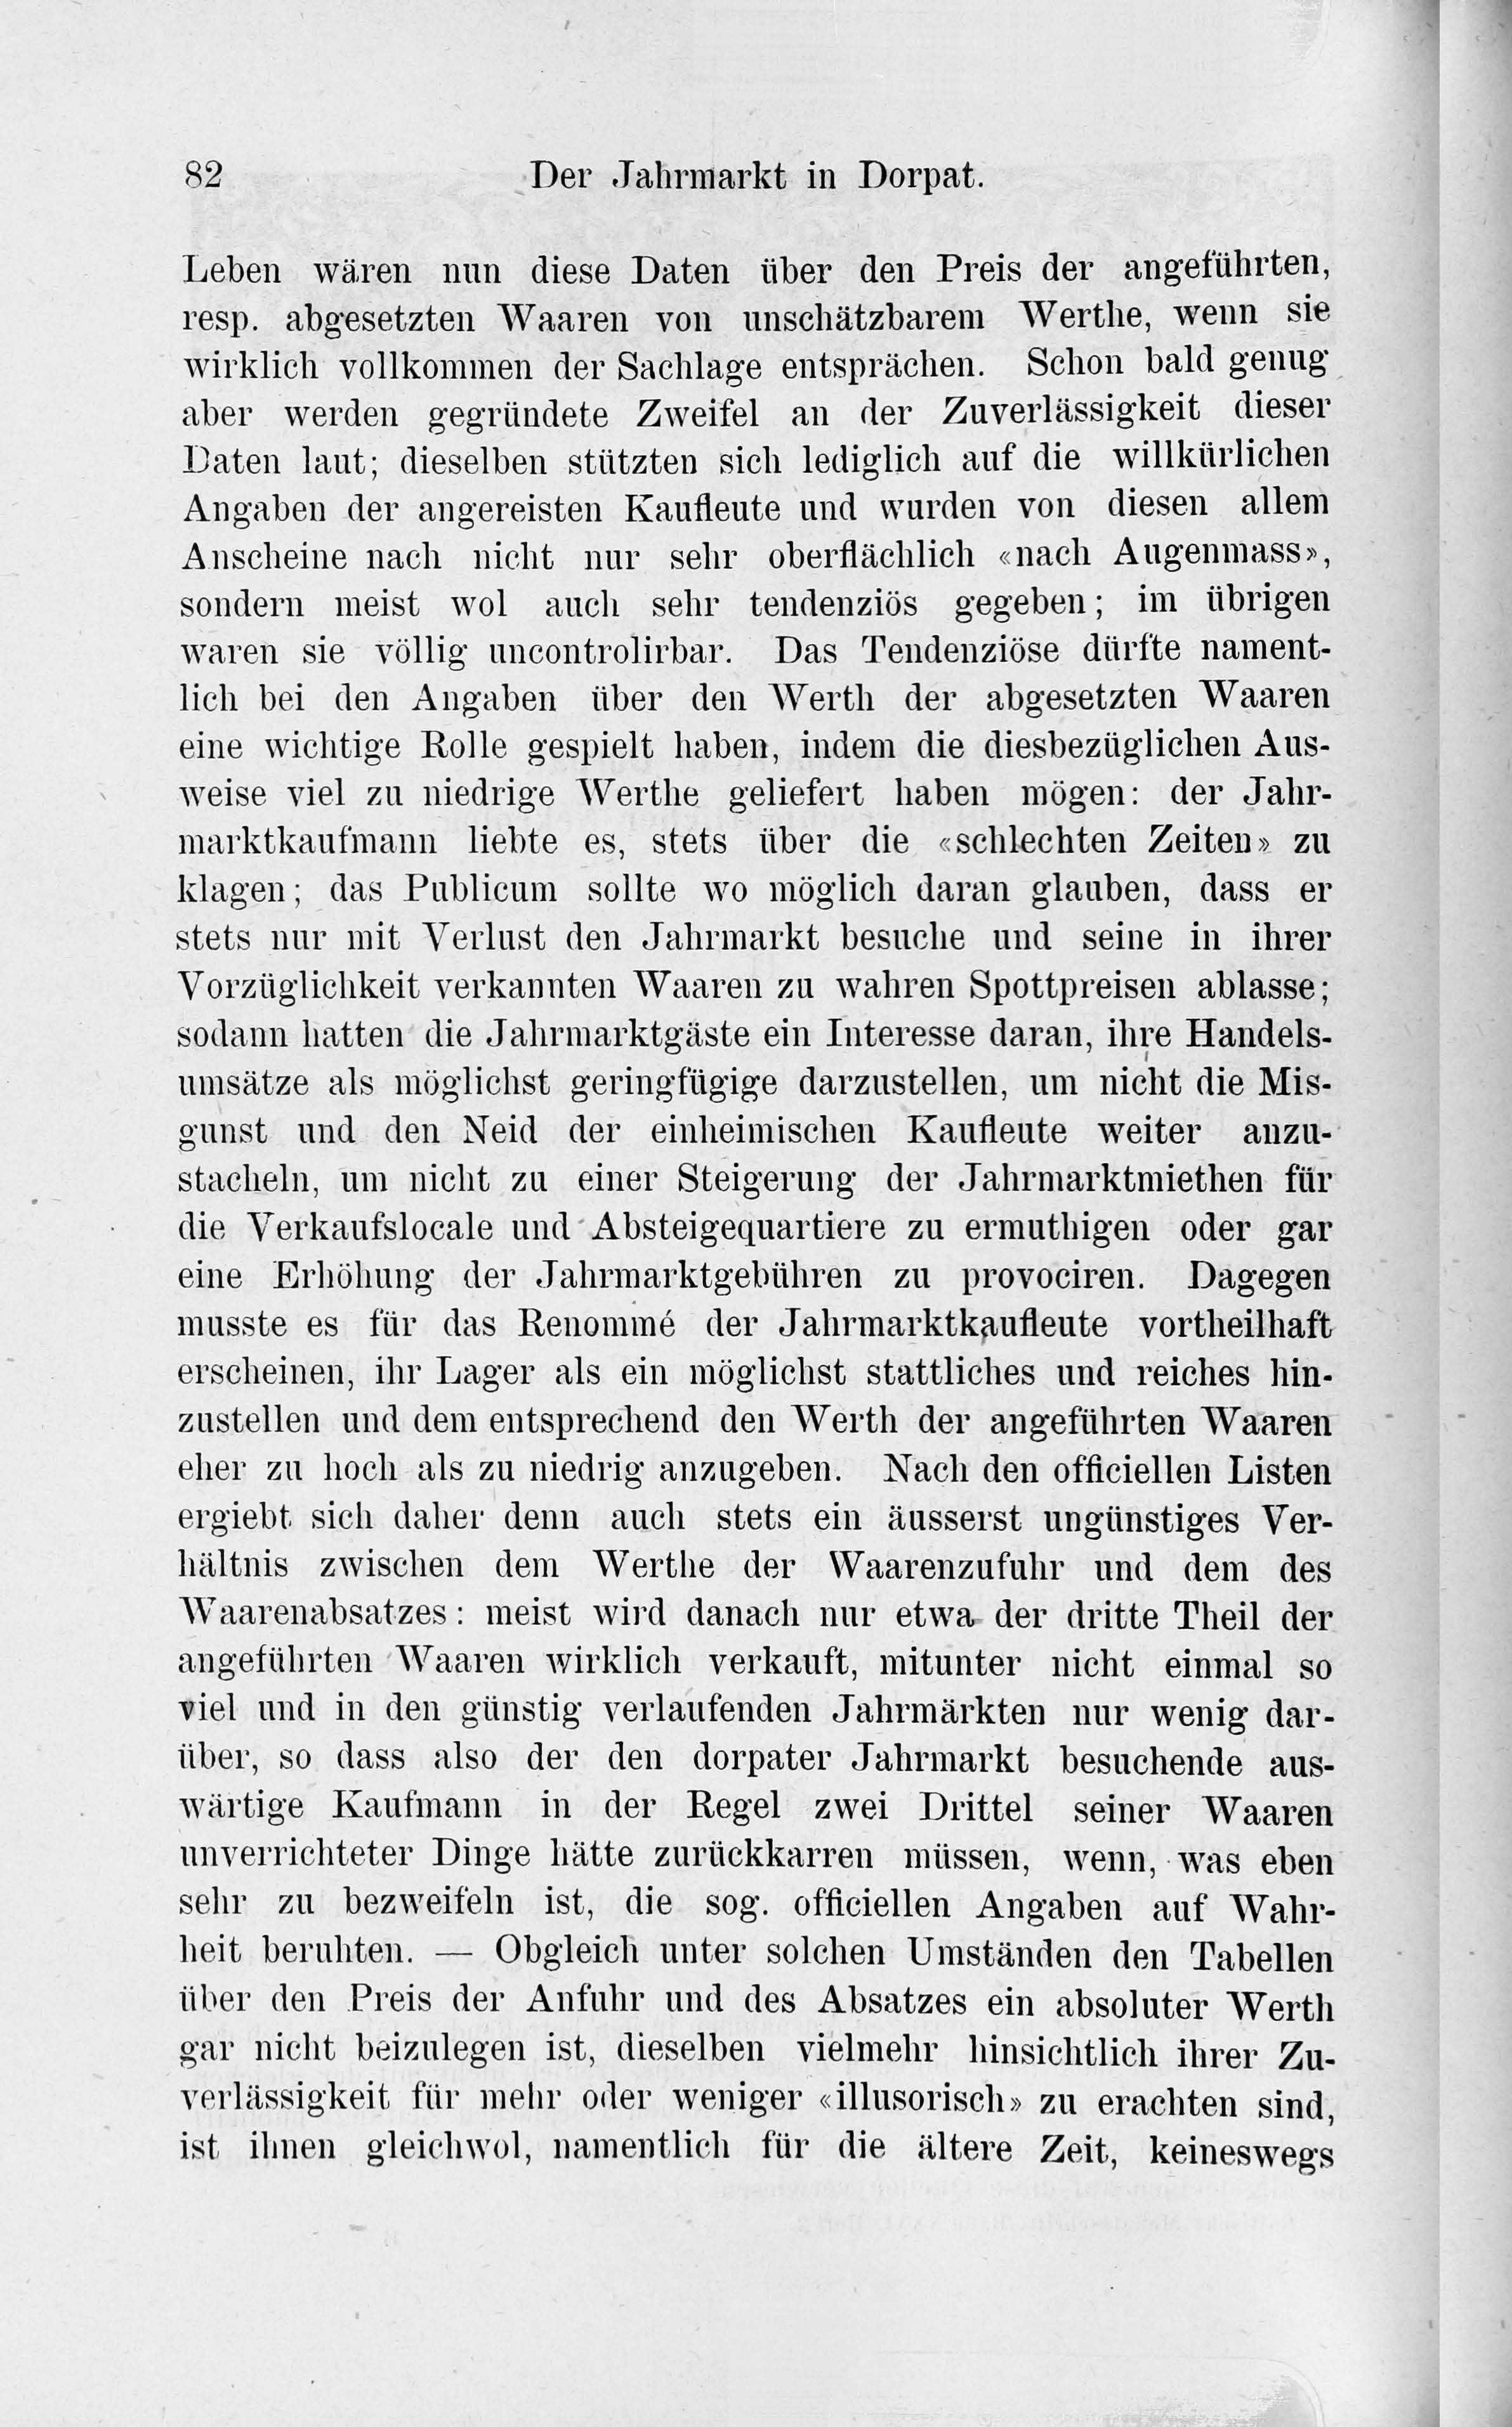 Der Jahrmarkt in Dorpat [2] (1884) | 2. Main body of text